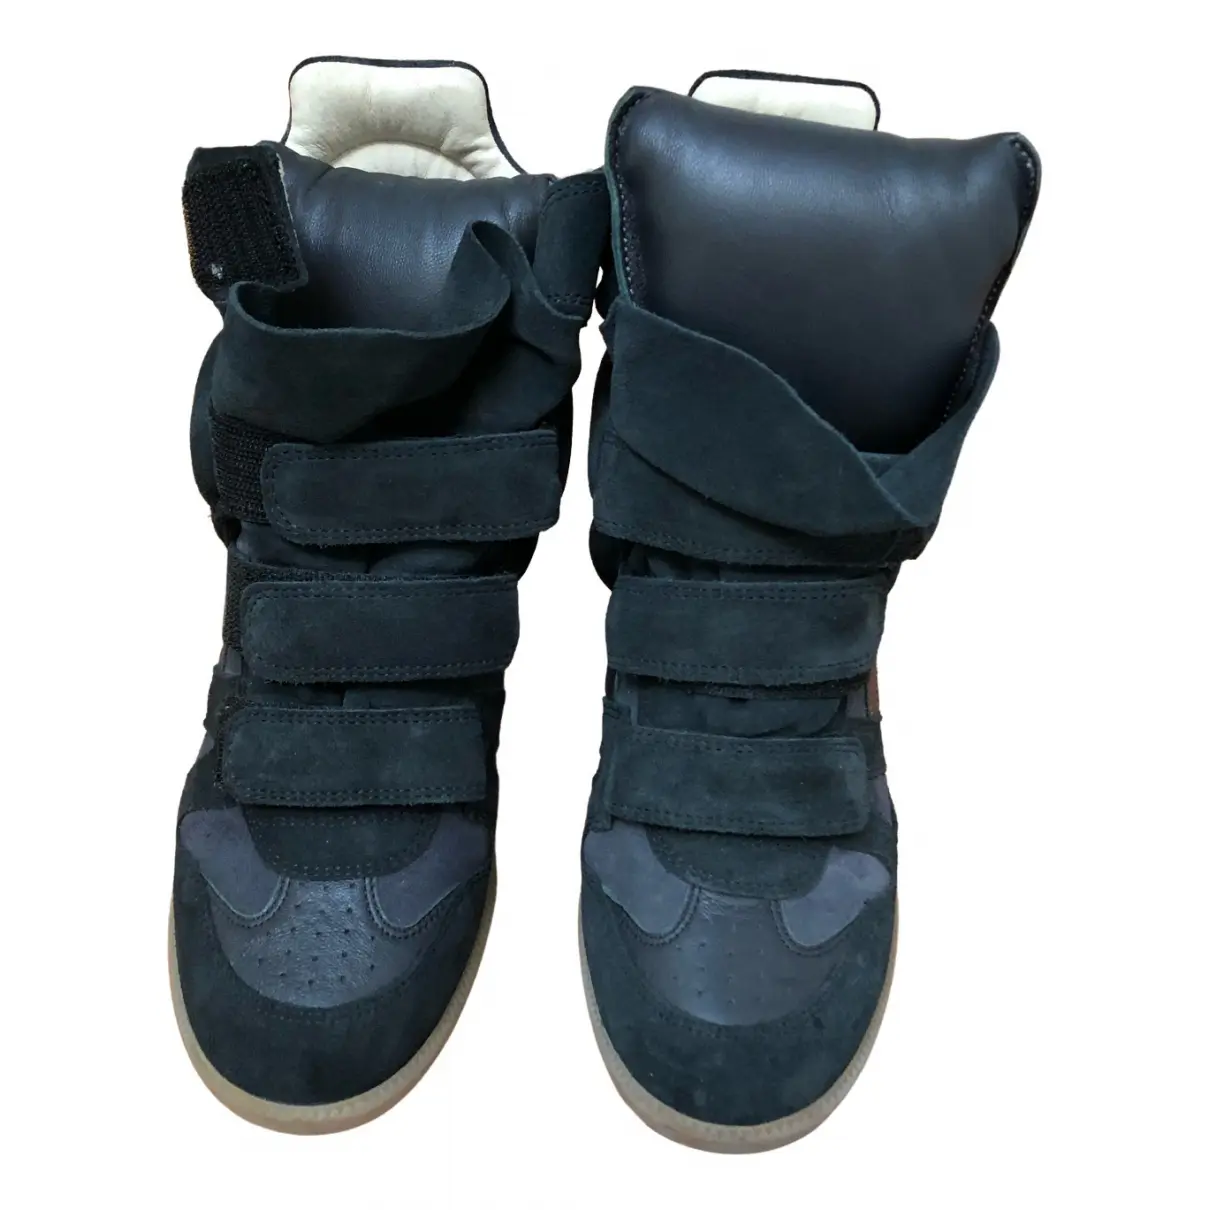 Snow boots Isabel Marant